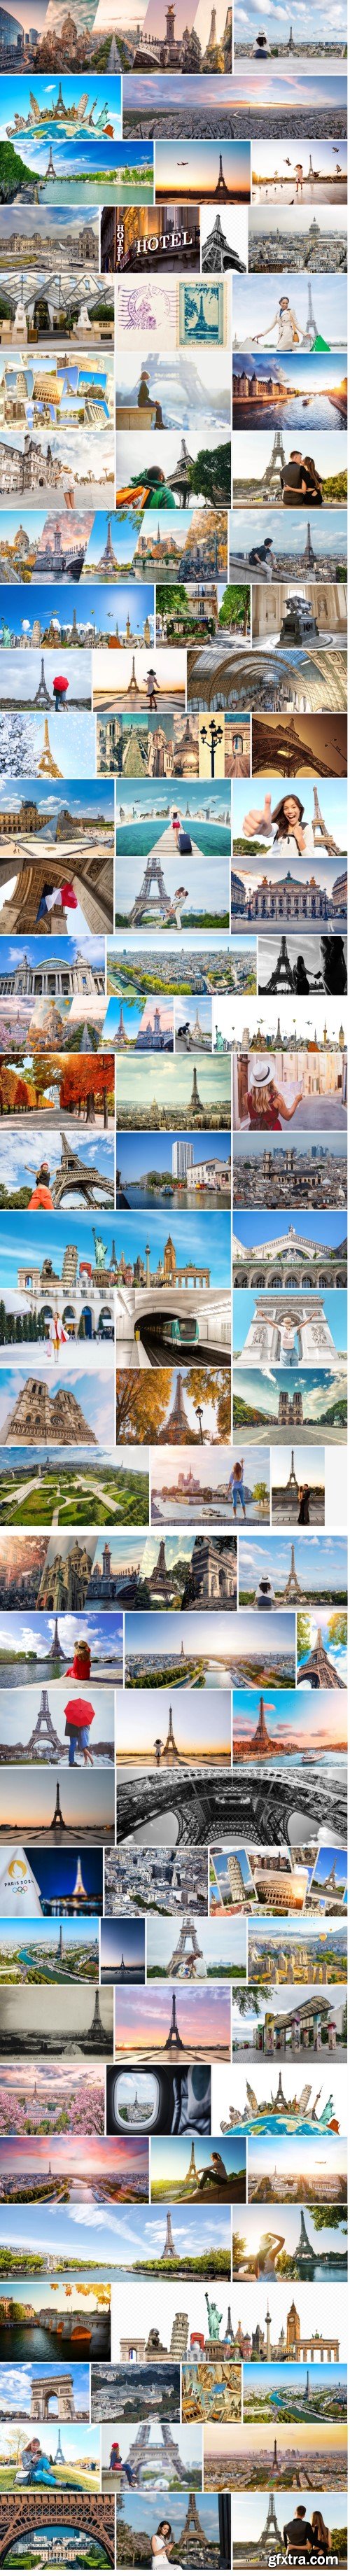 Paris Travel Destinations Stock Images